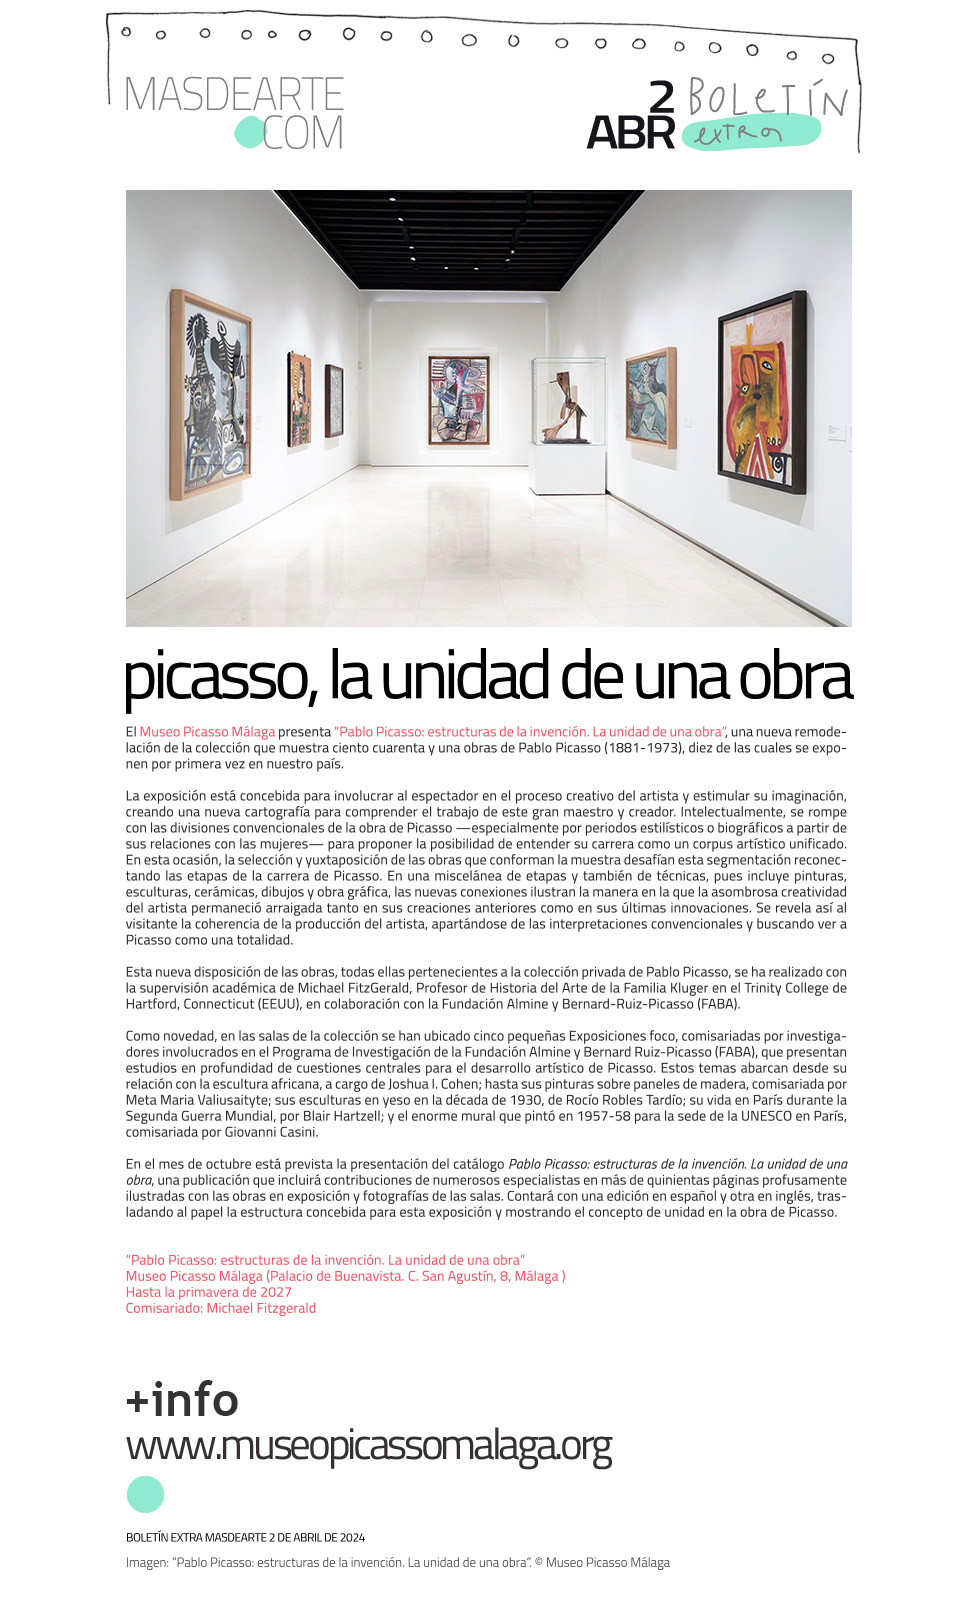 Extra masdearte: Pablo Picasso: estructuras
 de la invención. La unidad de una obra. Nueva presentación de la colección en el Museo Picasso Málaga